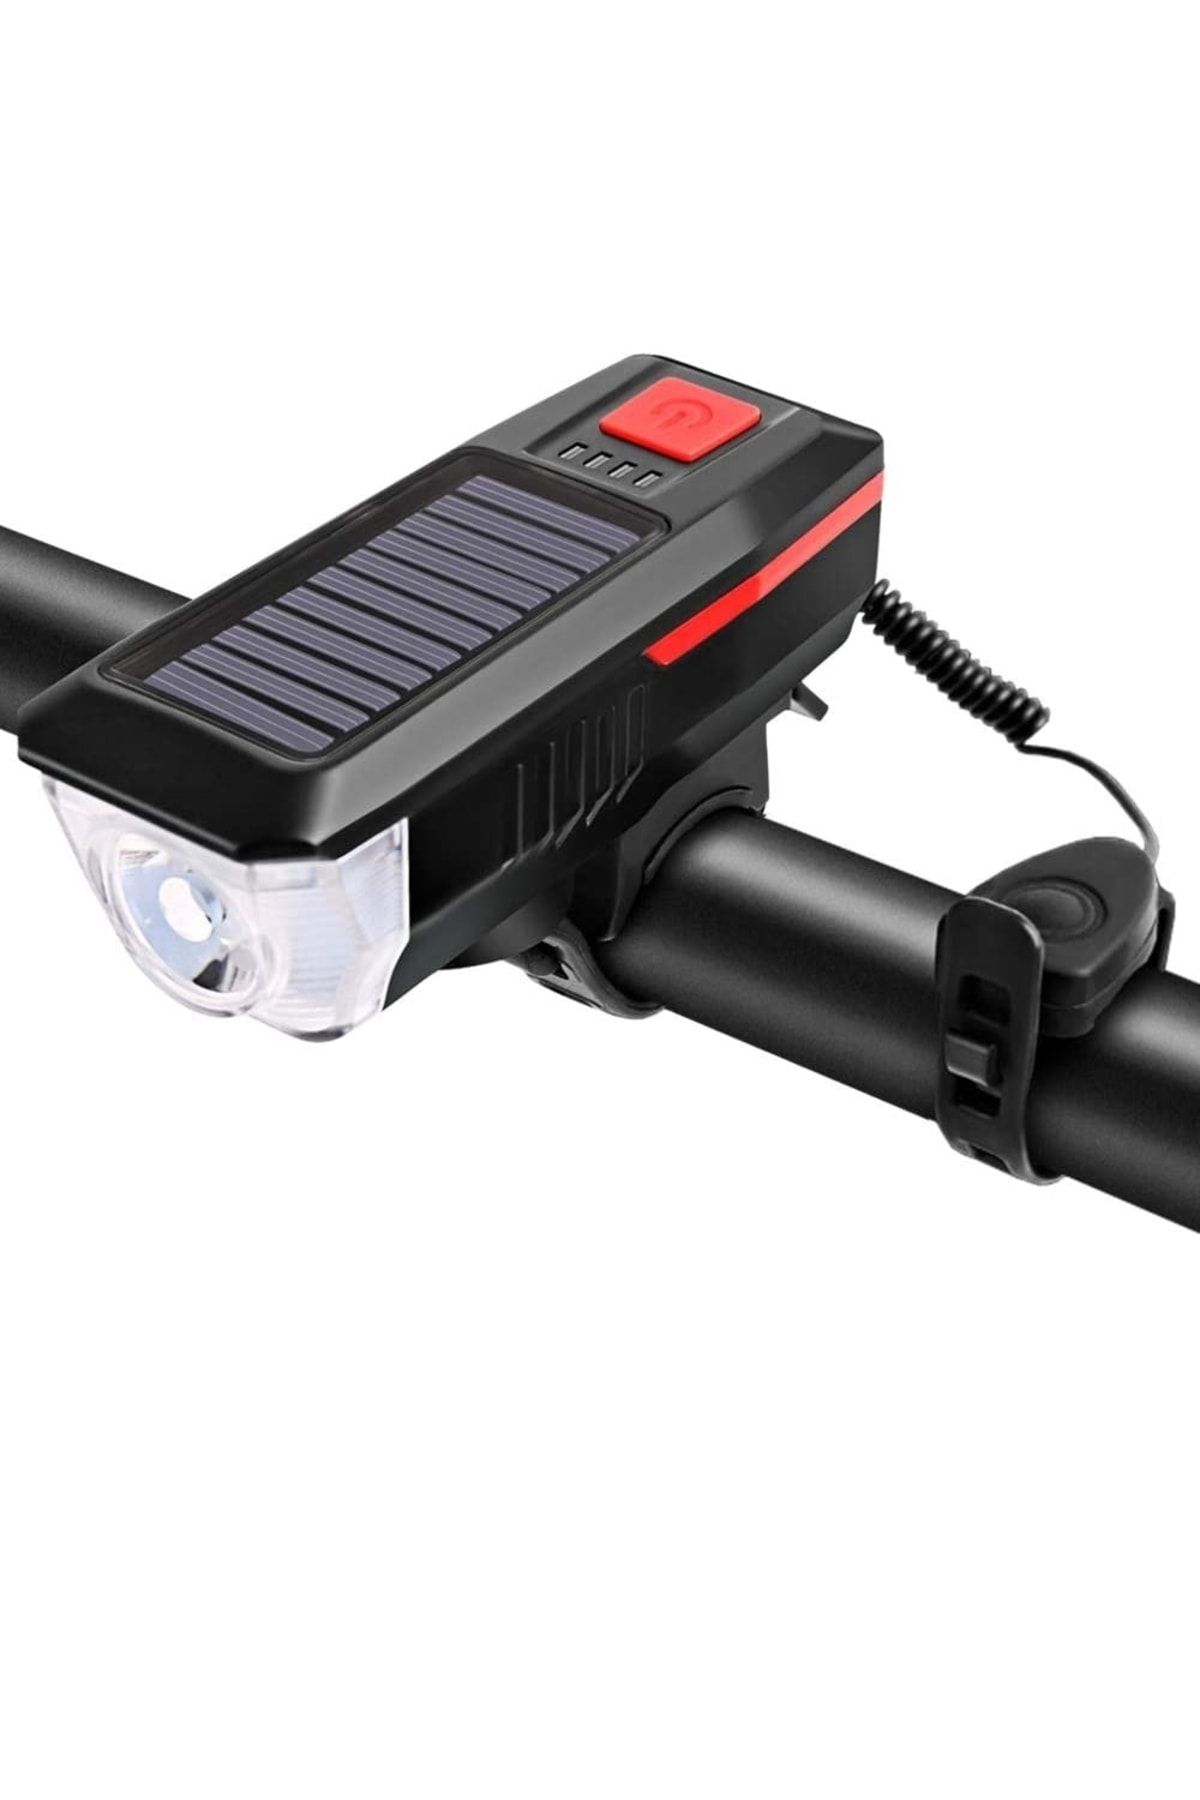 SARFEX Güneş Enerjili Usb Şarjlı Bisiklet Lambası Solar Fener Ön Işık Aydınlatma Kornalı